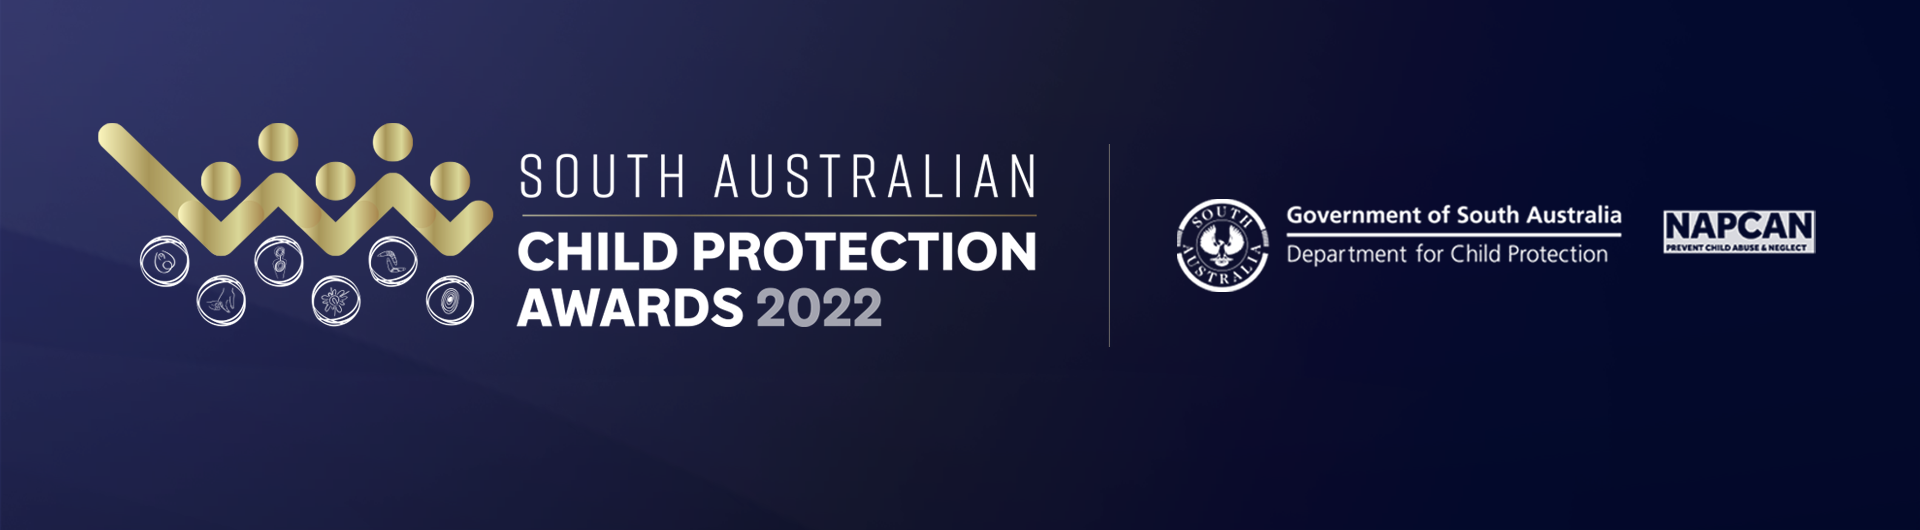 SA Child Protection Awards 2022